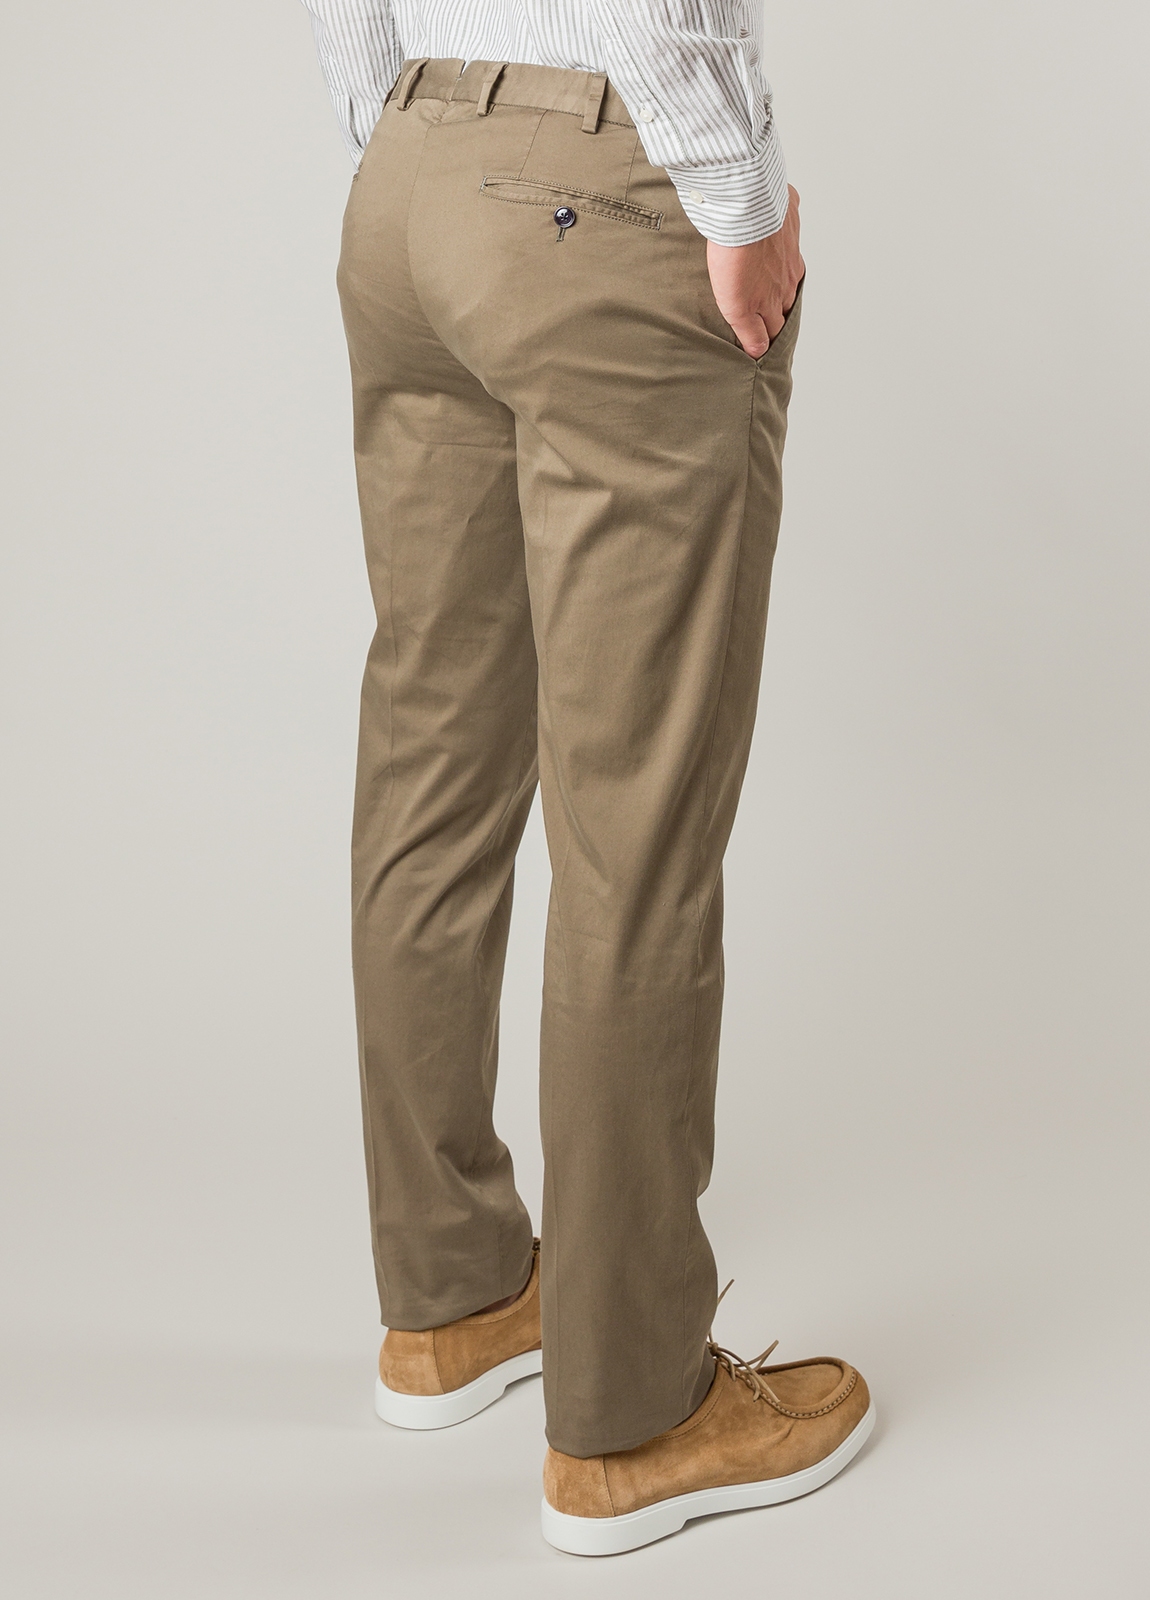 Pantalón sport FUREST COLECCION algodón marrón - Ítem3